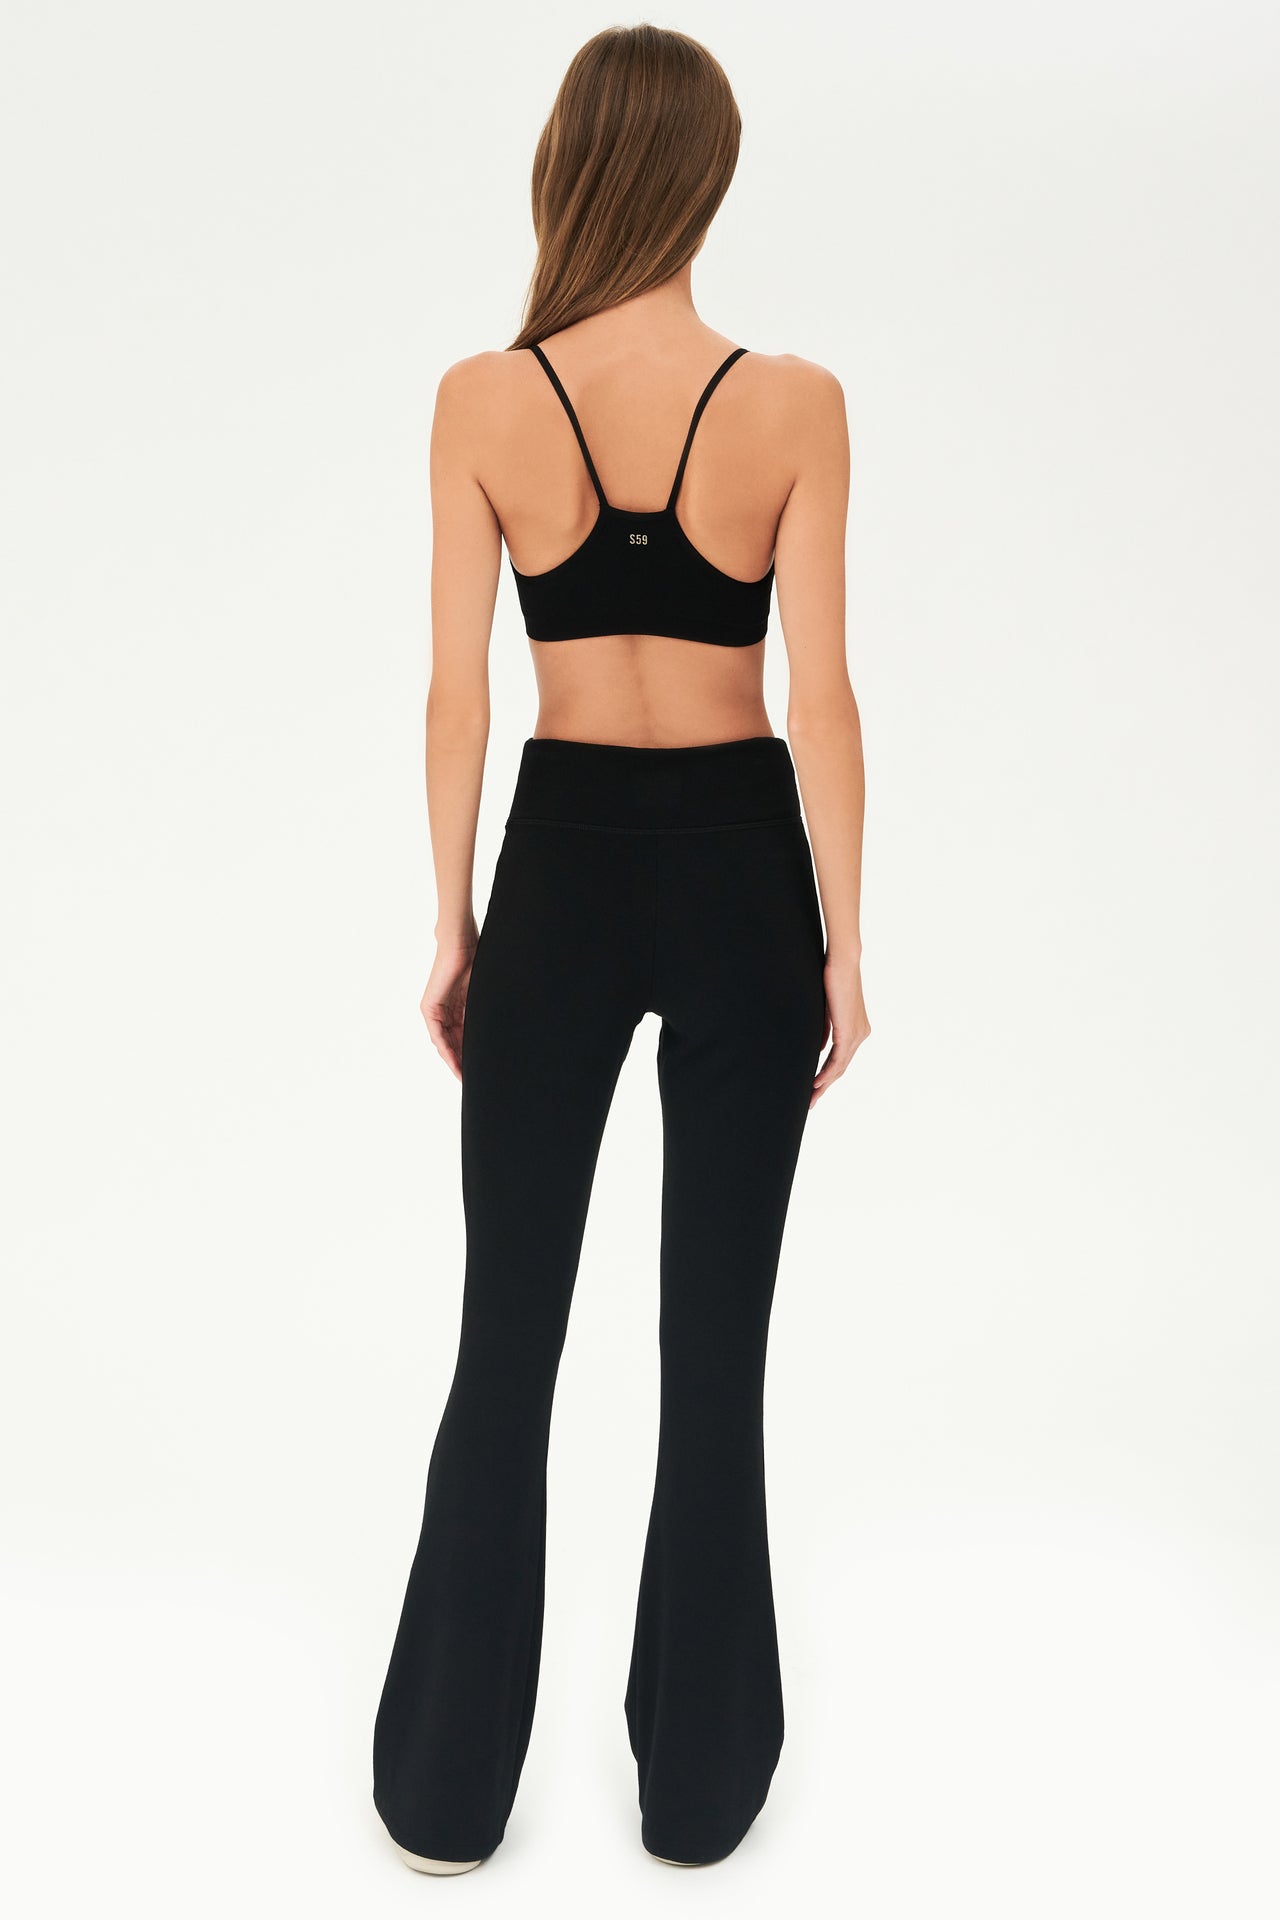 The back view of a woman wearing SPLITS59 Raquel Fleece Flare - Black leggings.